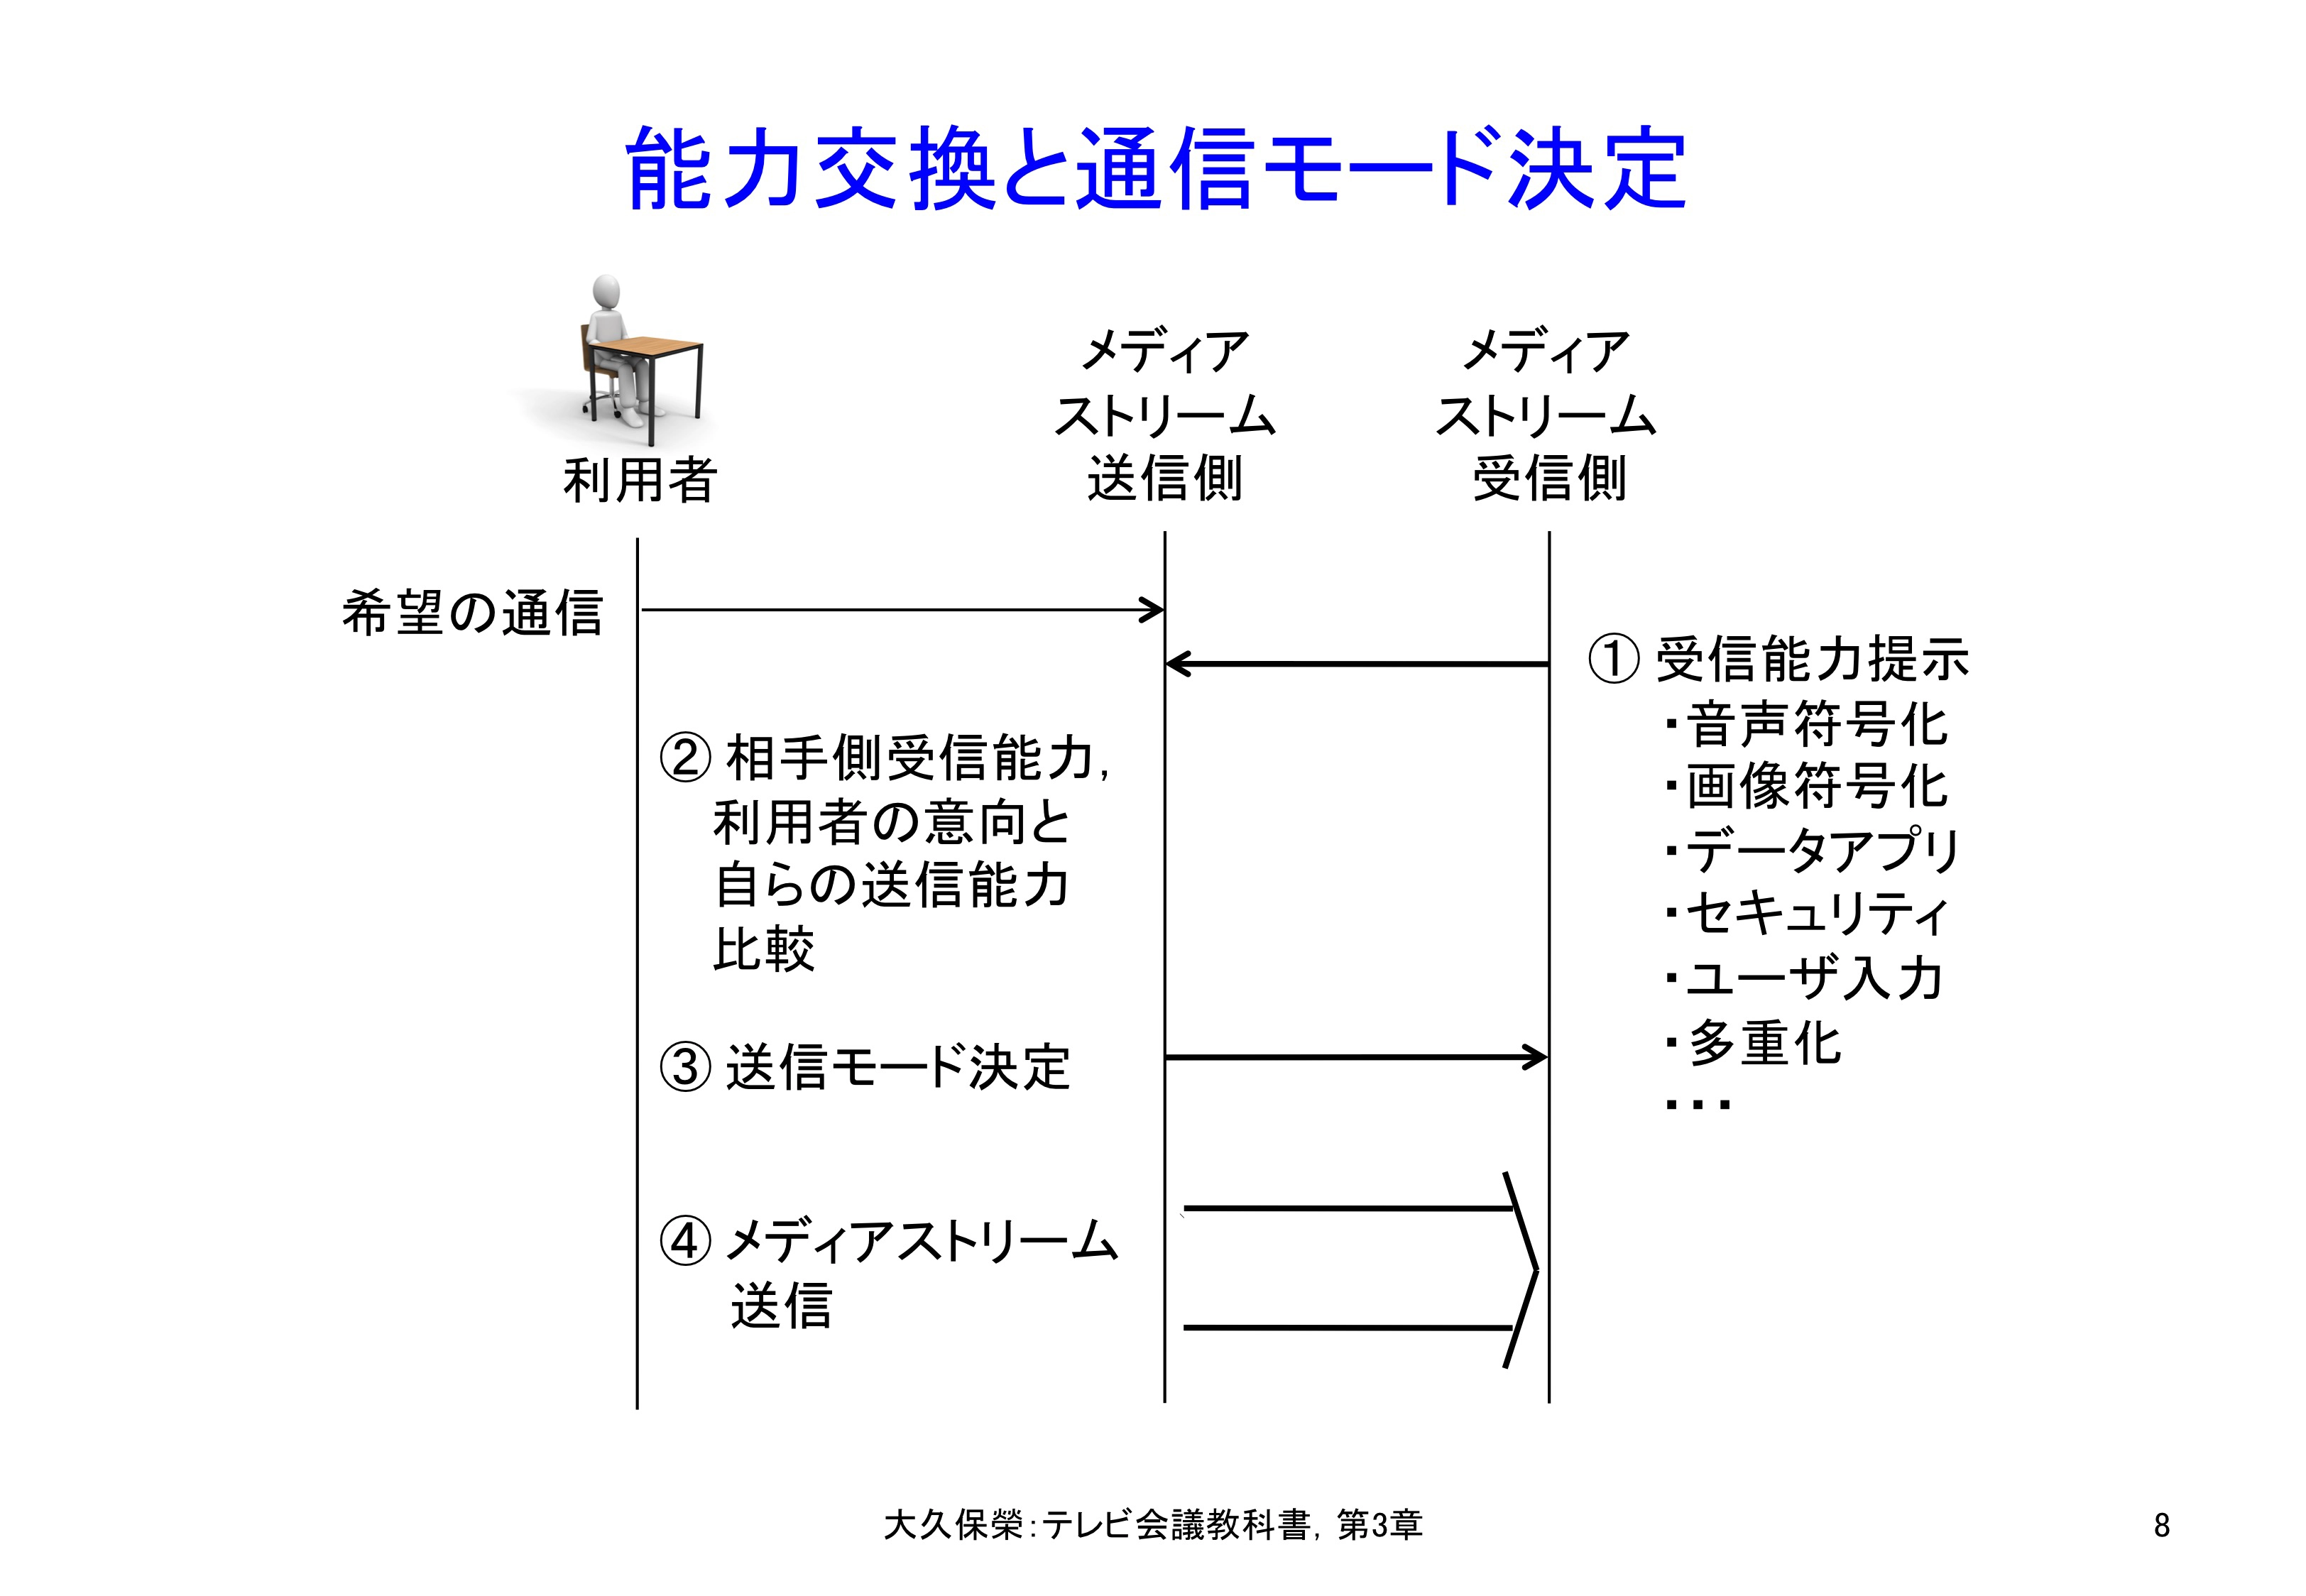 図3-8 テレビ会議システムの能力交換と通信モード決定